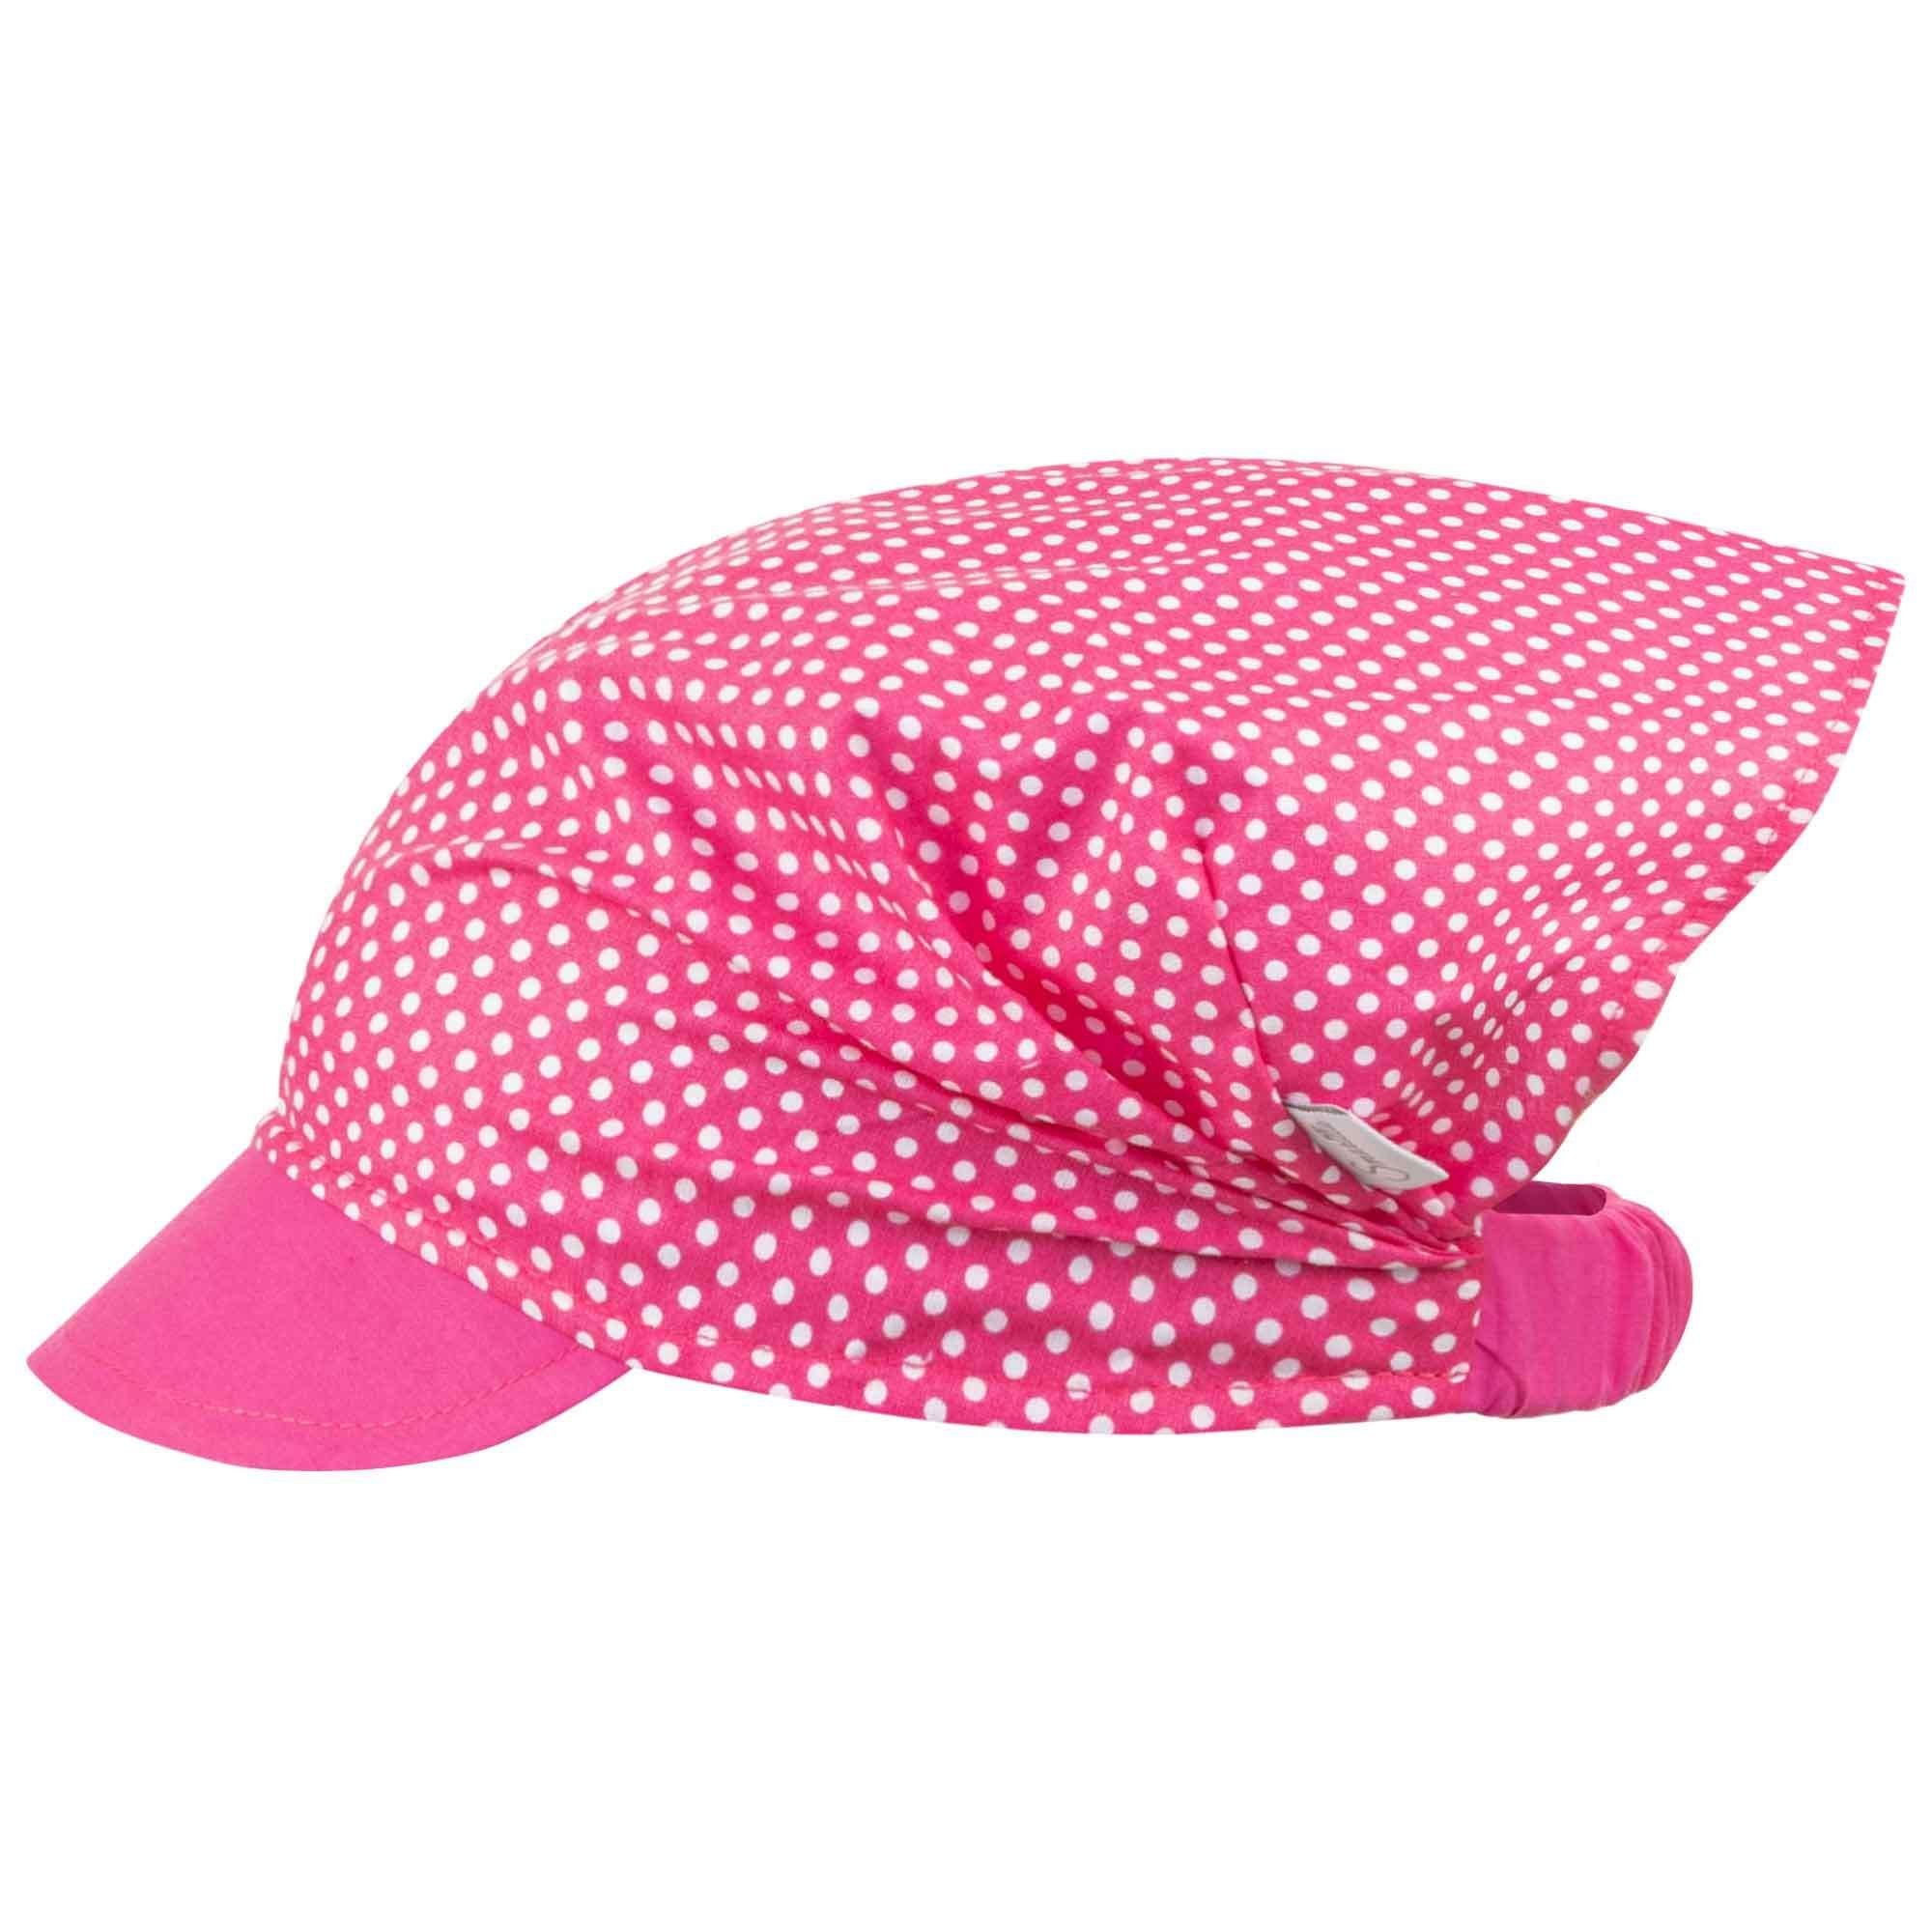 Schirmmütze Kopftuch Baumwolle Sommermütze Rosa Smarilla Mädchenmütze